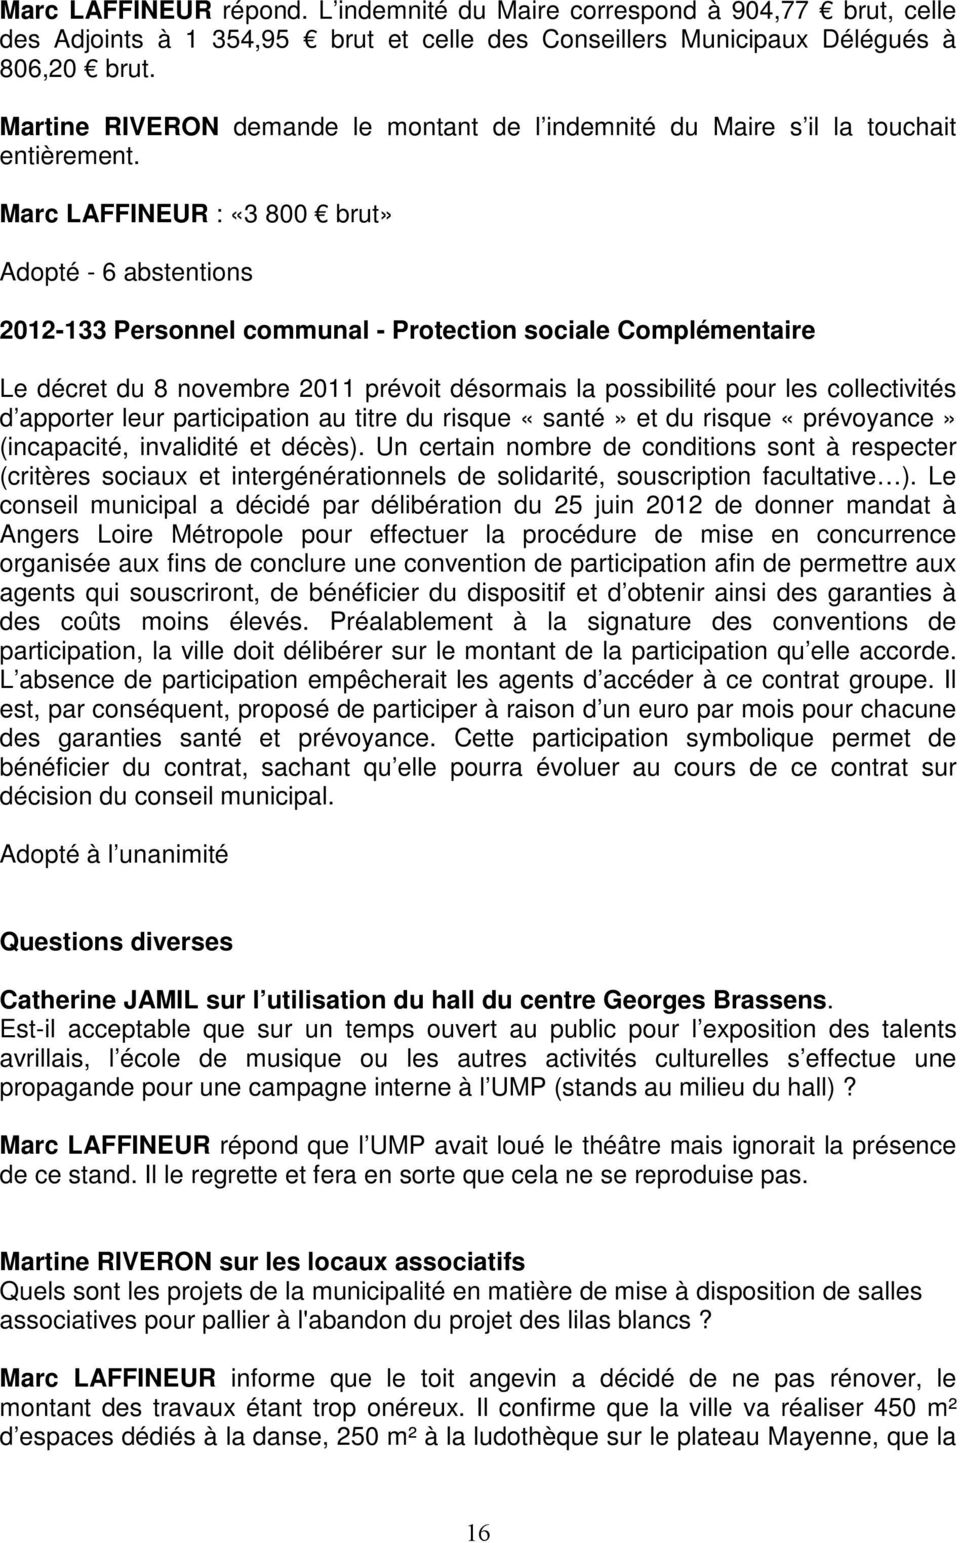 Marc LAFFINEUR : «3 800 brut» Adopté - 6 abstentions 2012-133 Personnel communal - Protection sociale Complémentaire Le décret du 8 novembre 2011 prévoit désormais la possibilité pour les